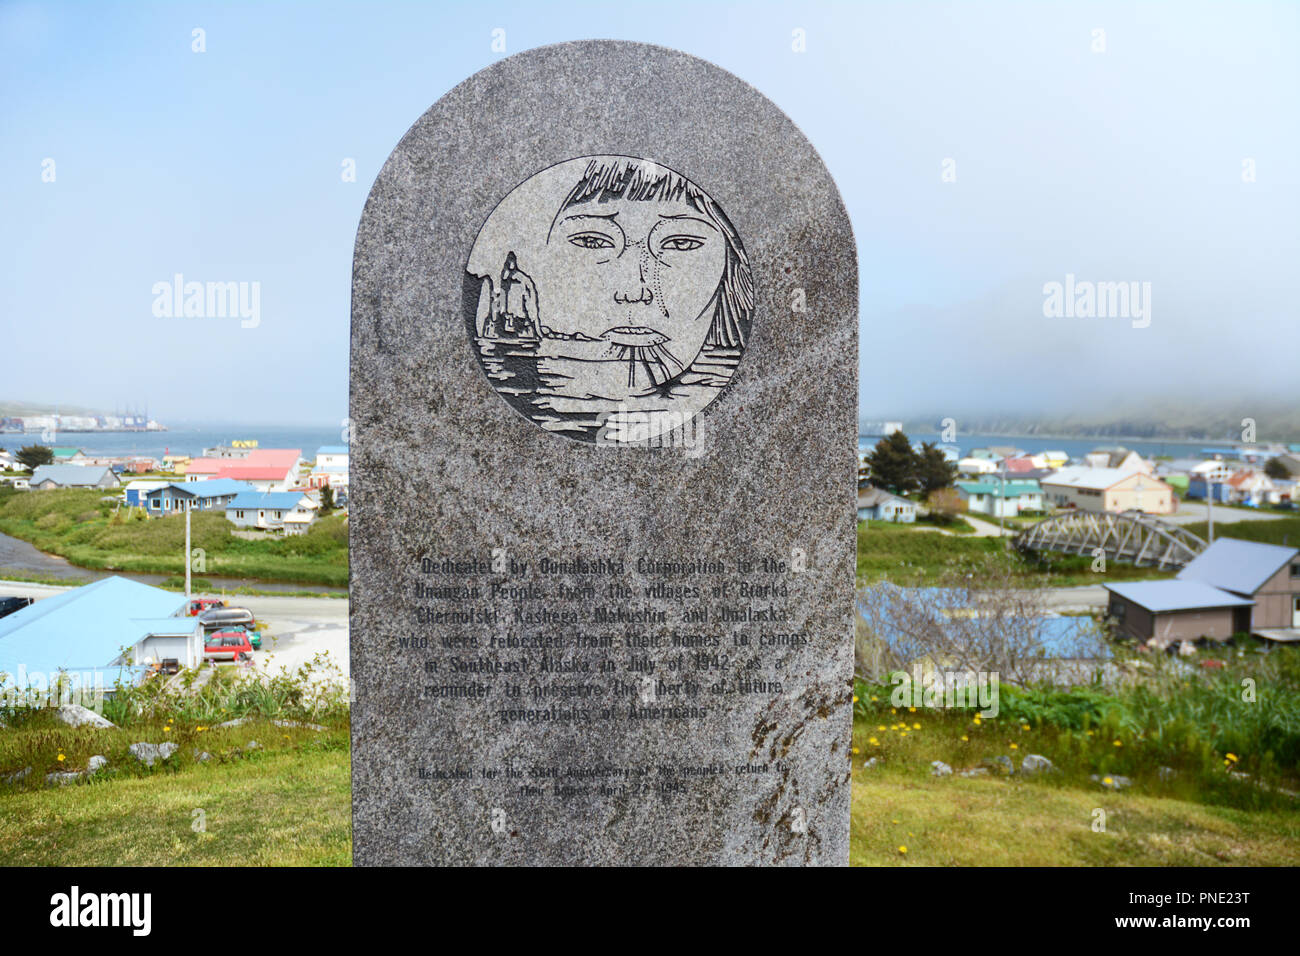 Un monument commémorant l'internement forcé et mort de Unangan résidents des îles Aléoutiennes dans la seconde guerre mondiale, dans la région de Unalaska, Alaska, USA. Banque D'Images